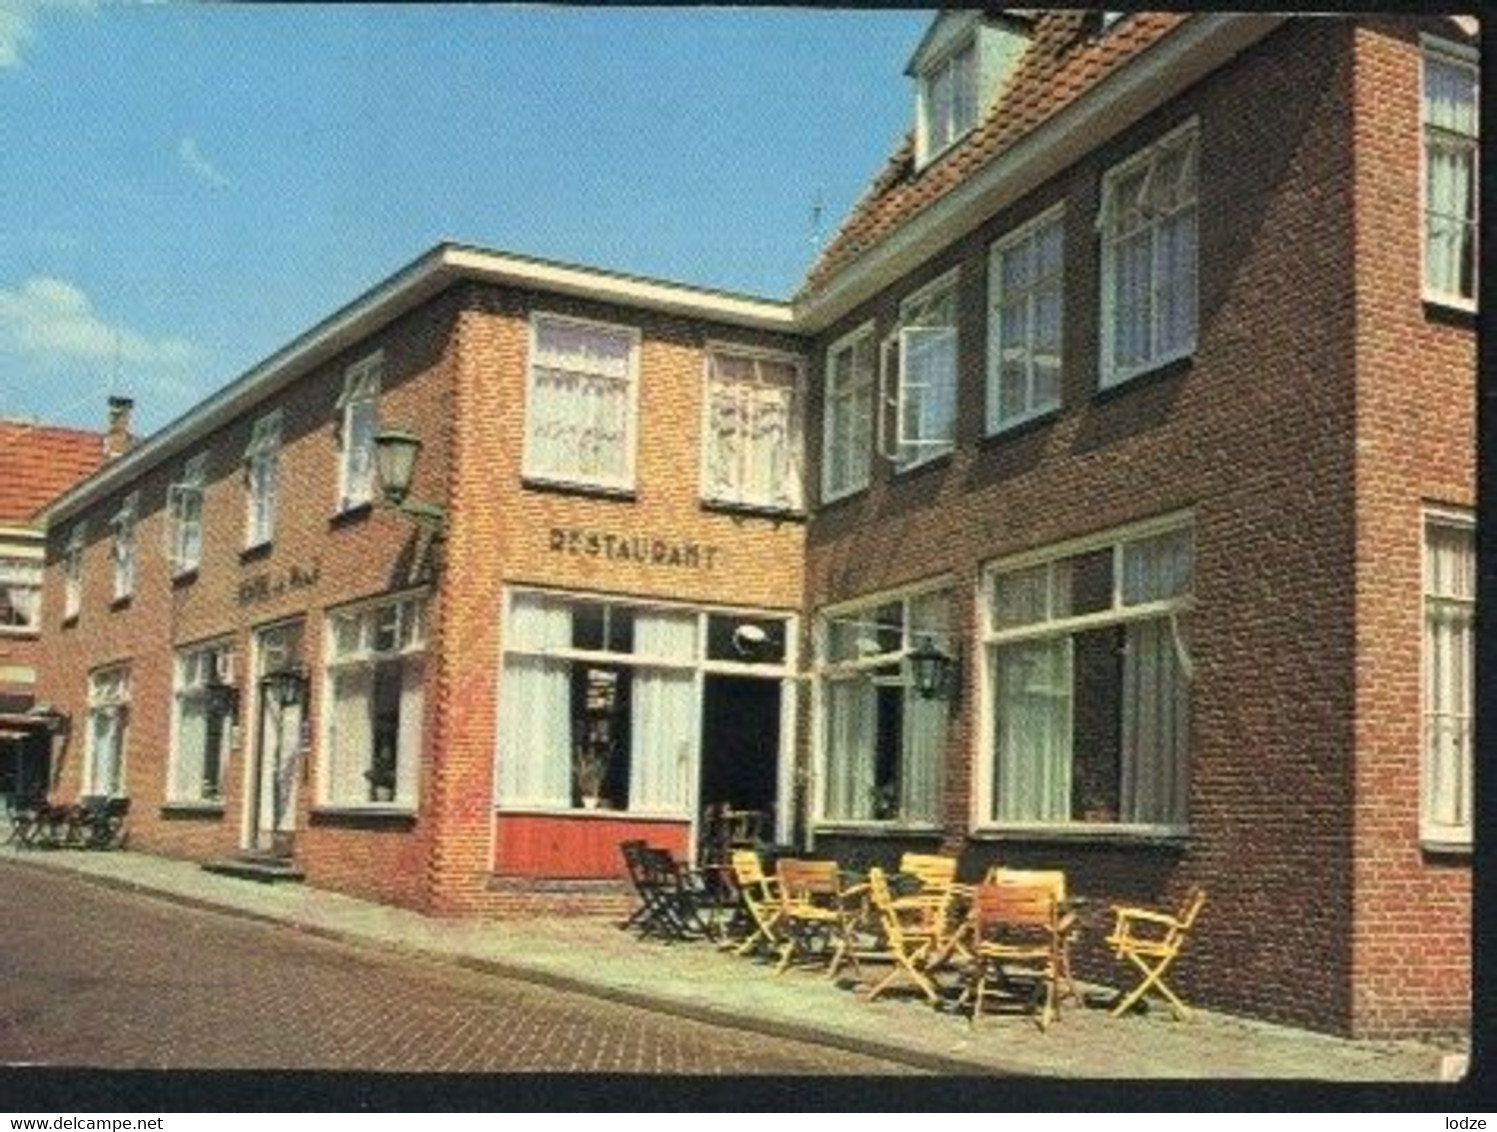 Nederland Holland Pays Bas Ootmarsum Met Hotel Van Der Maas - Ootmarsum